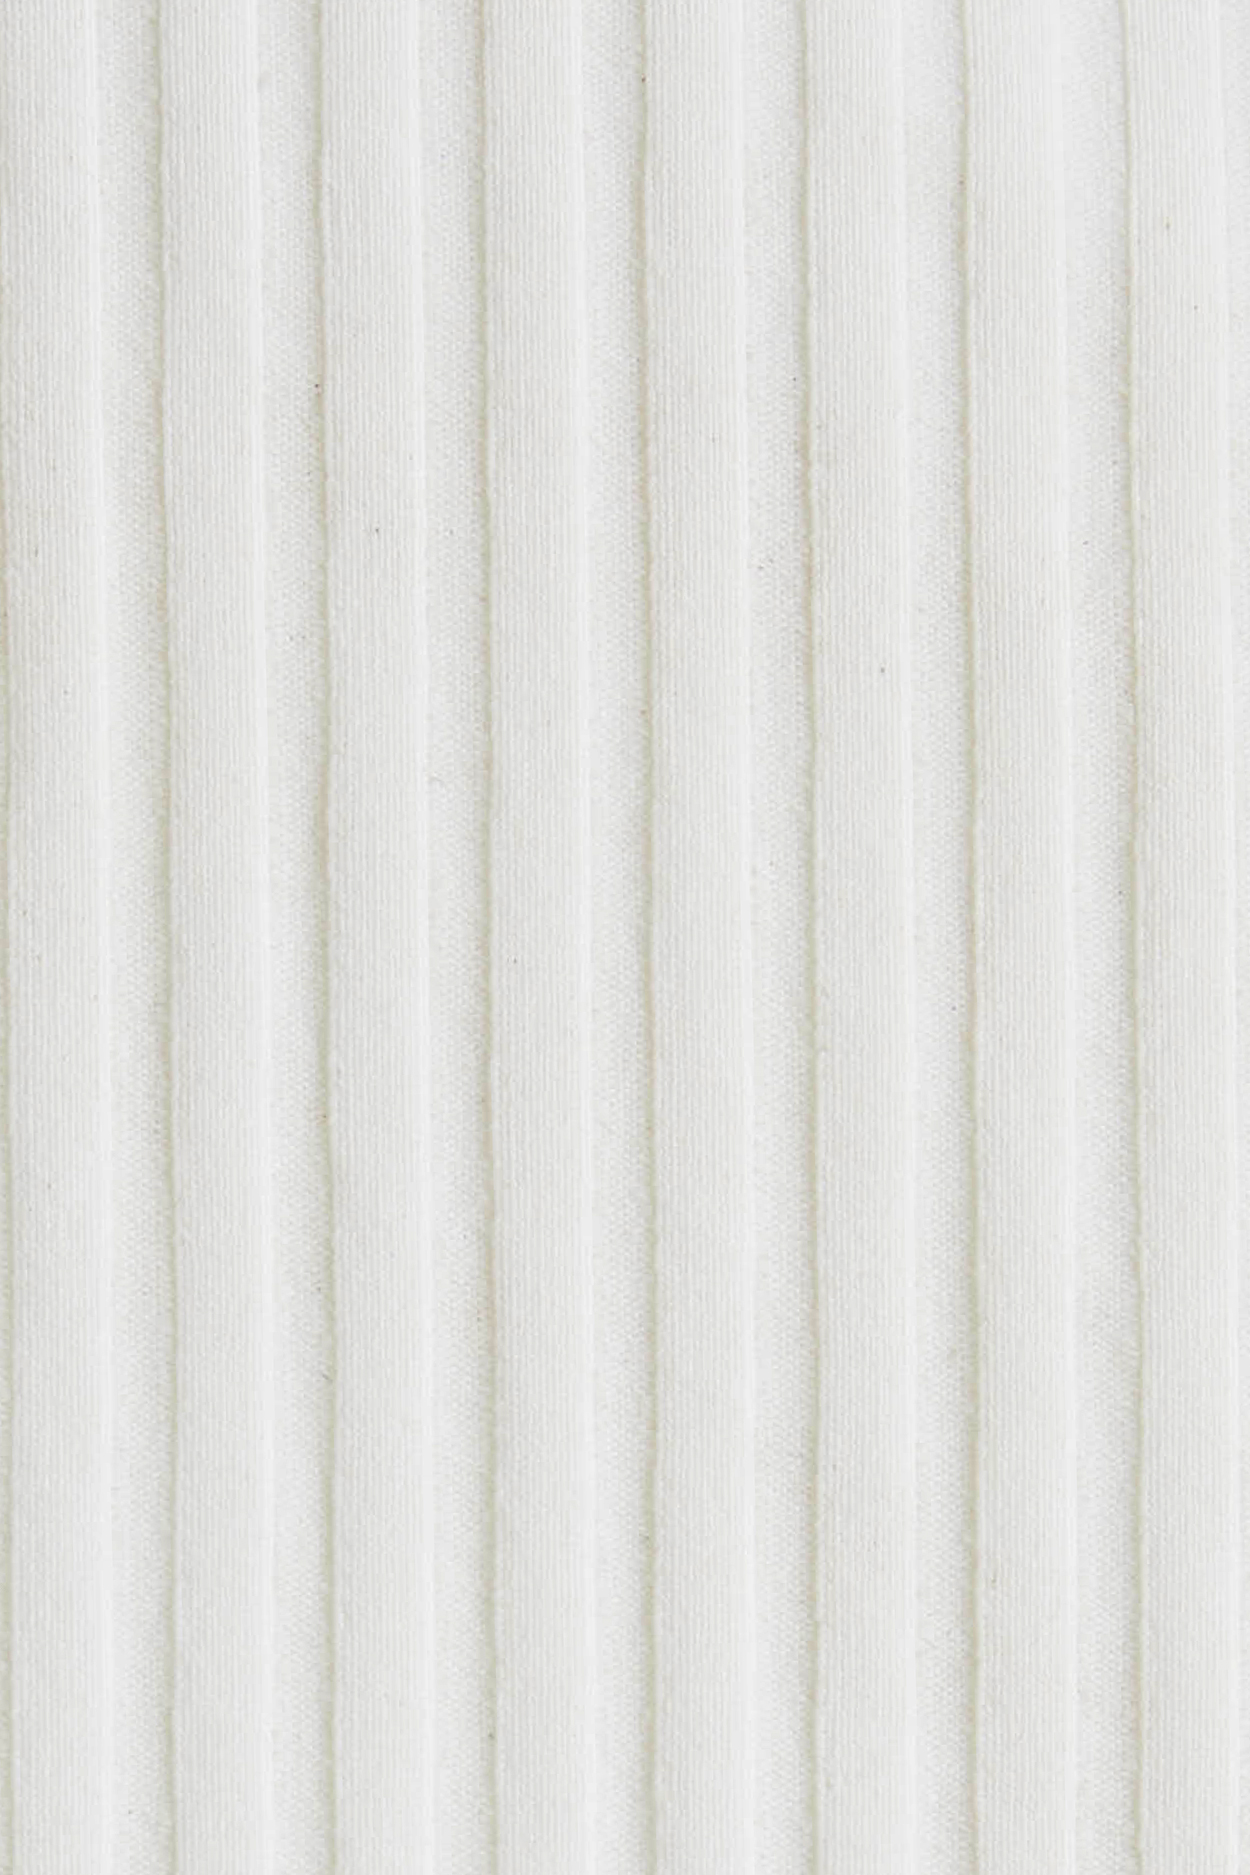 White EcoRib fabric swatch detail